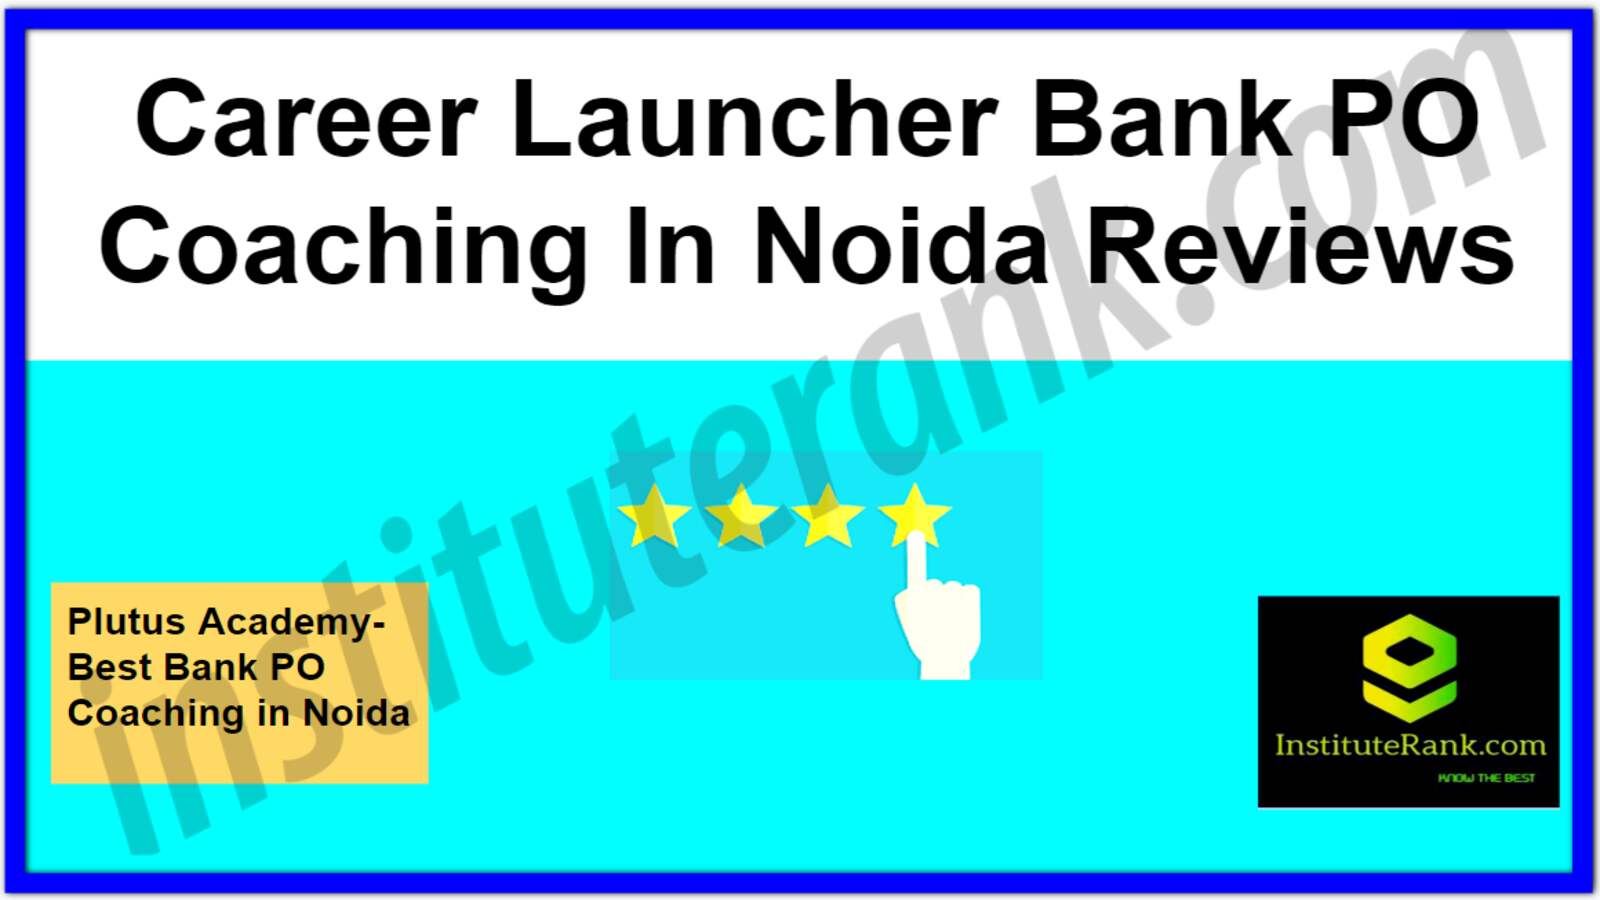 Career Launcher Bank PO Coaching in Noida Reviews